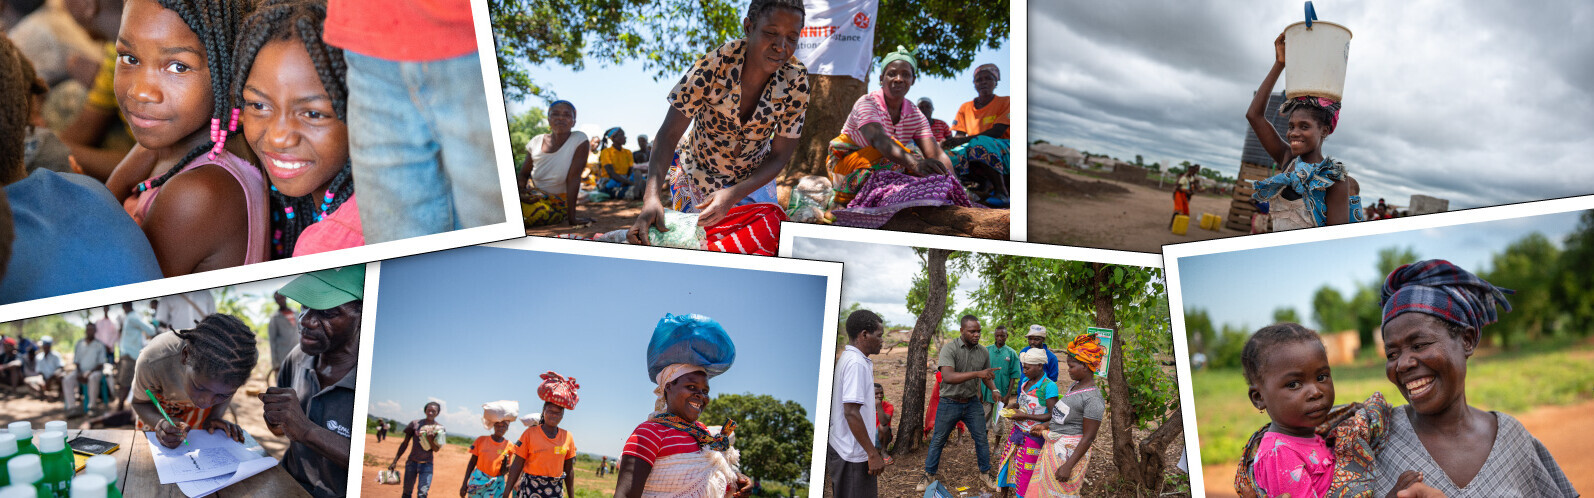 Bildergalerie Menschen ein Jahr nach Zyklon in Mosambik